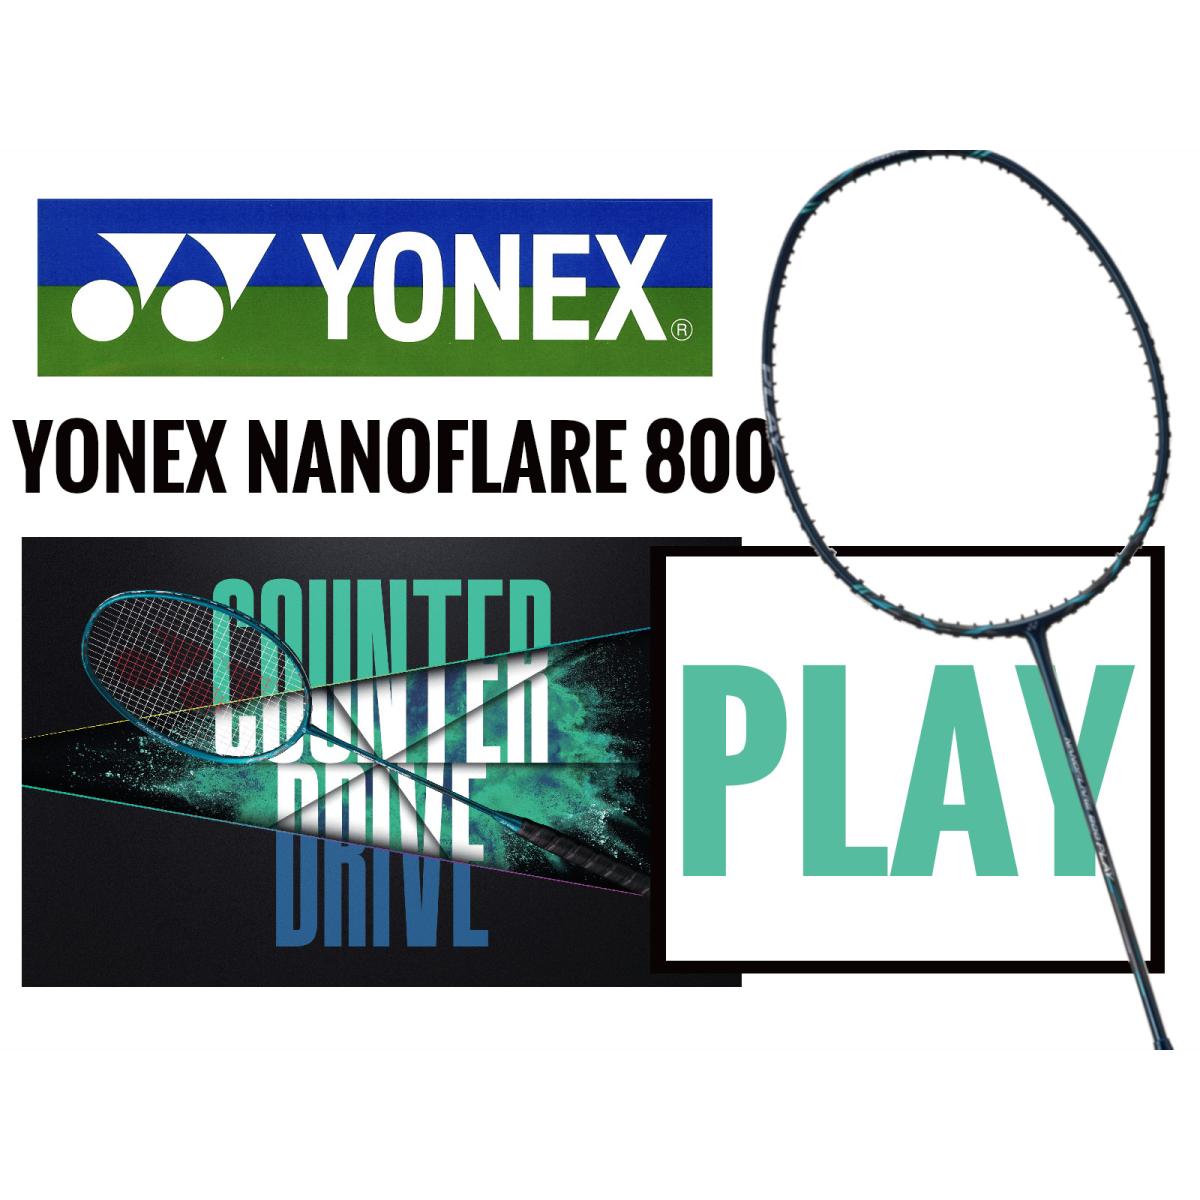 Yonex Nanoflare 800 Play Deep Green NF-800G (Made In China